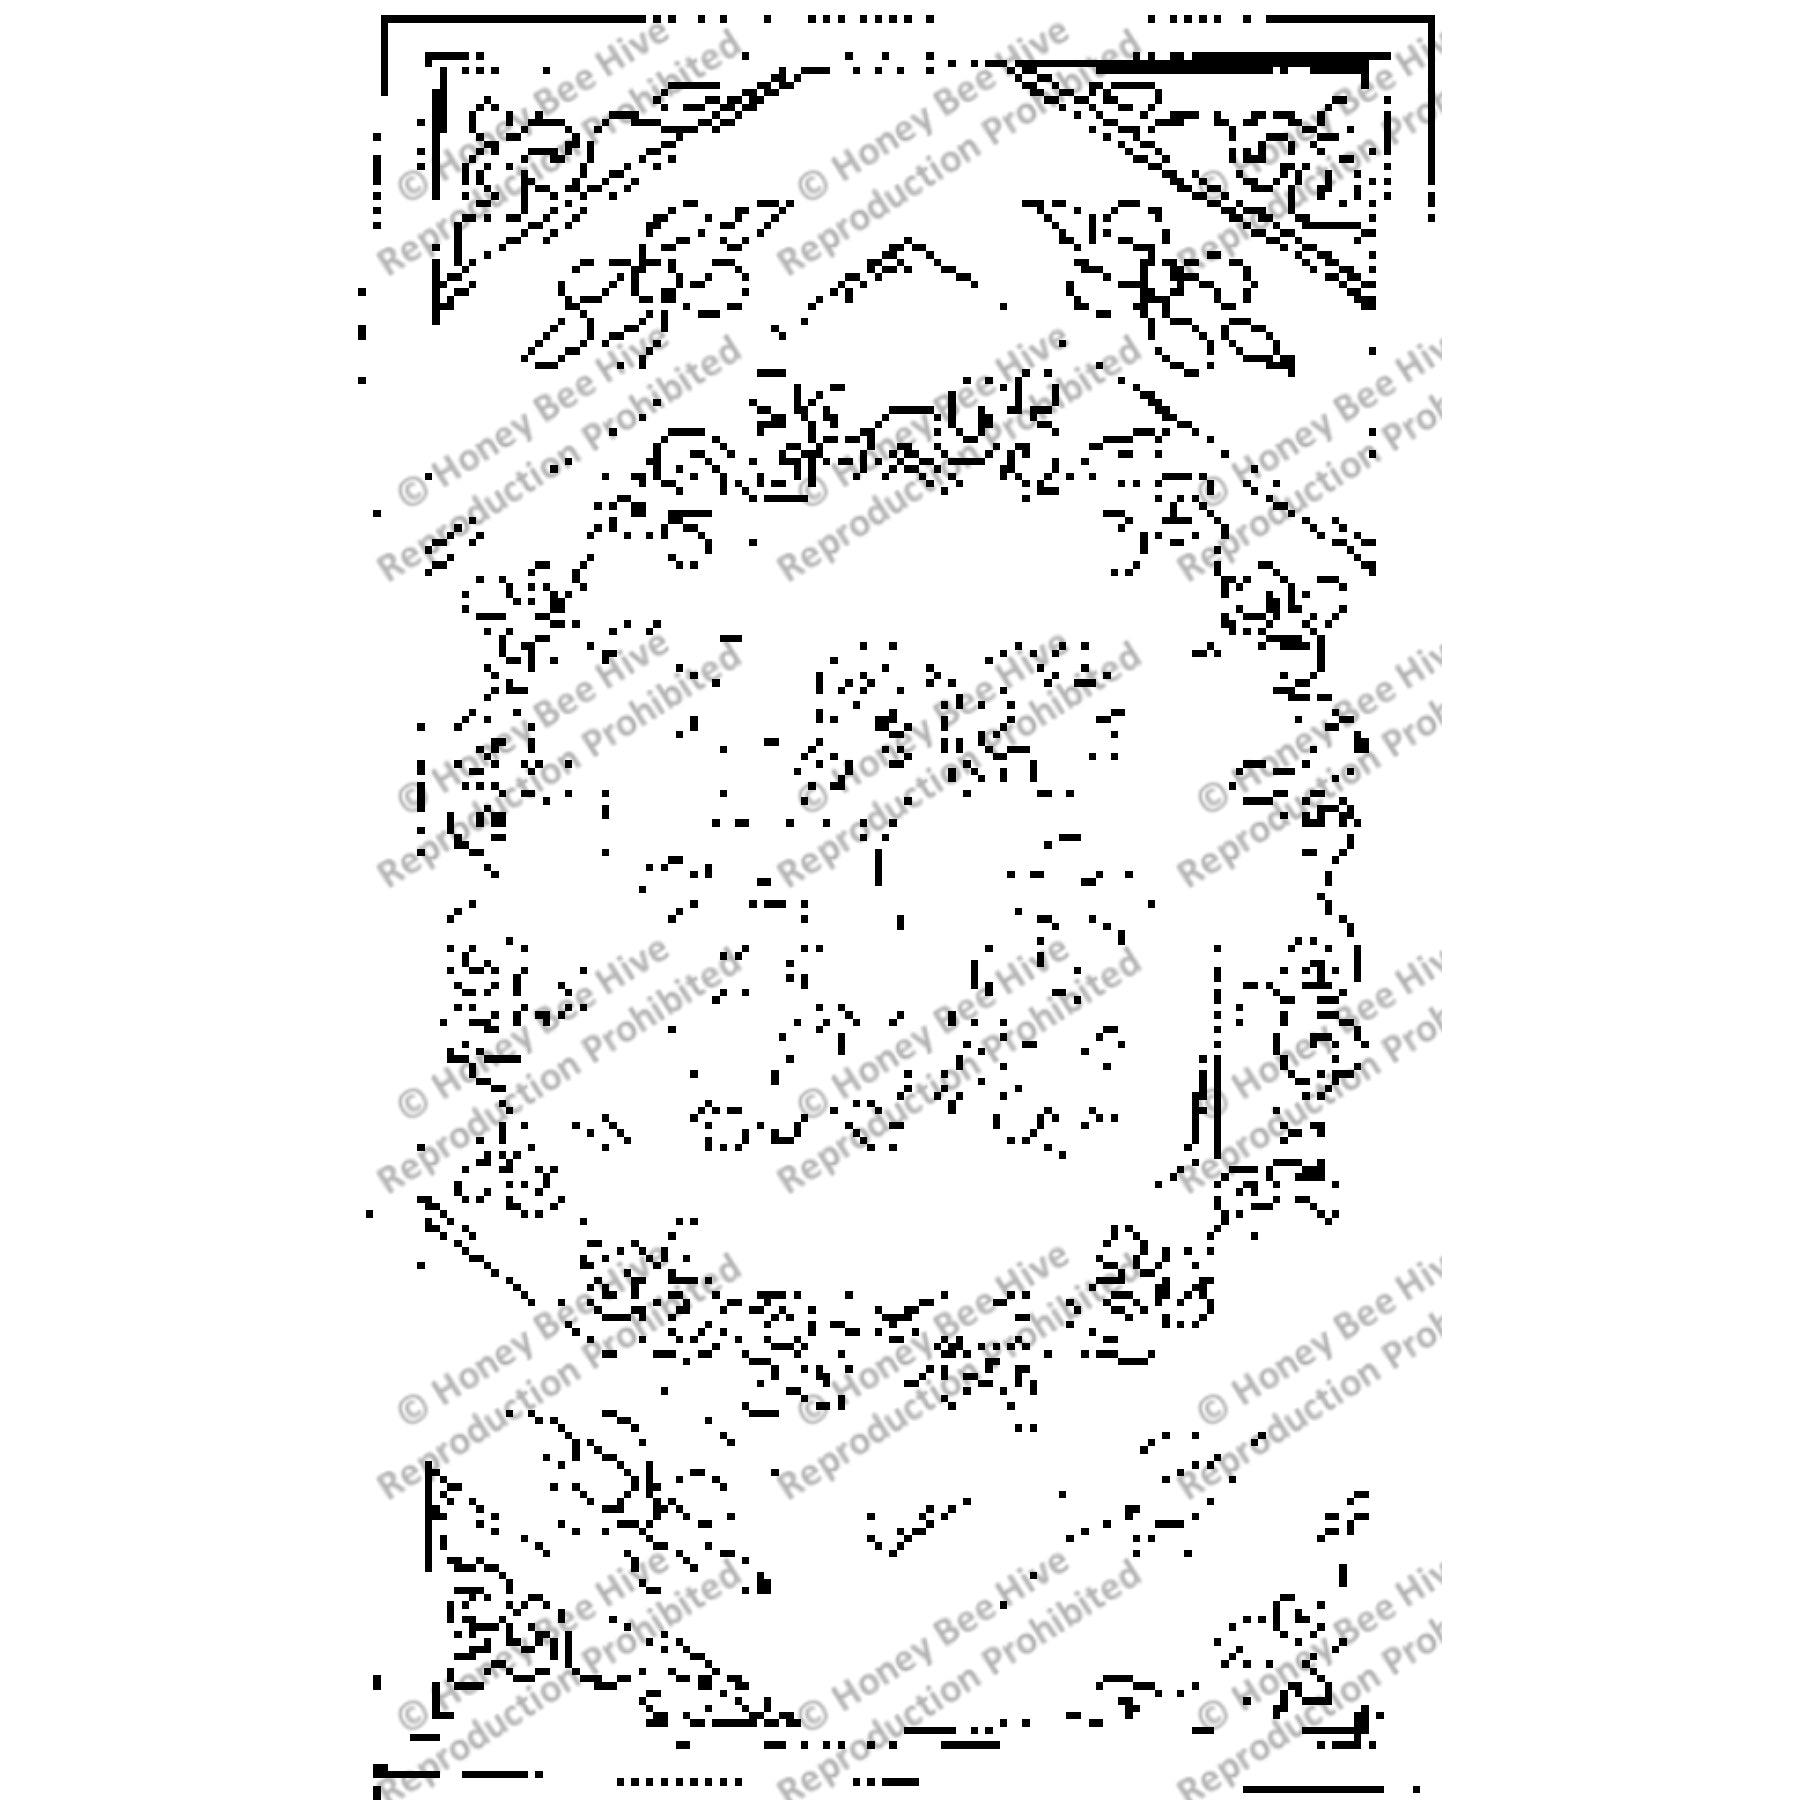 Early Frrost (Adptn), rug hooking pattern